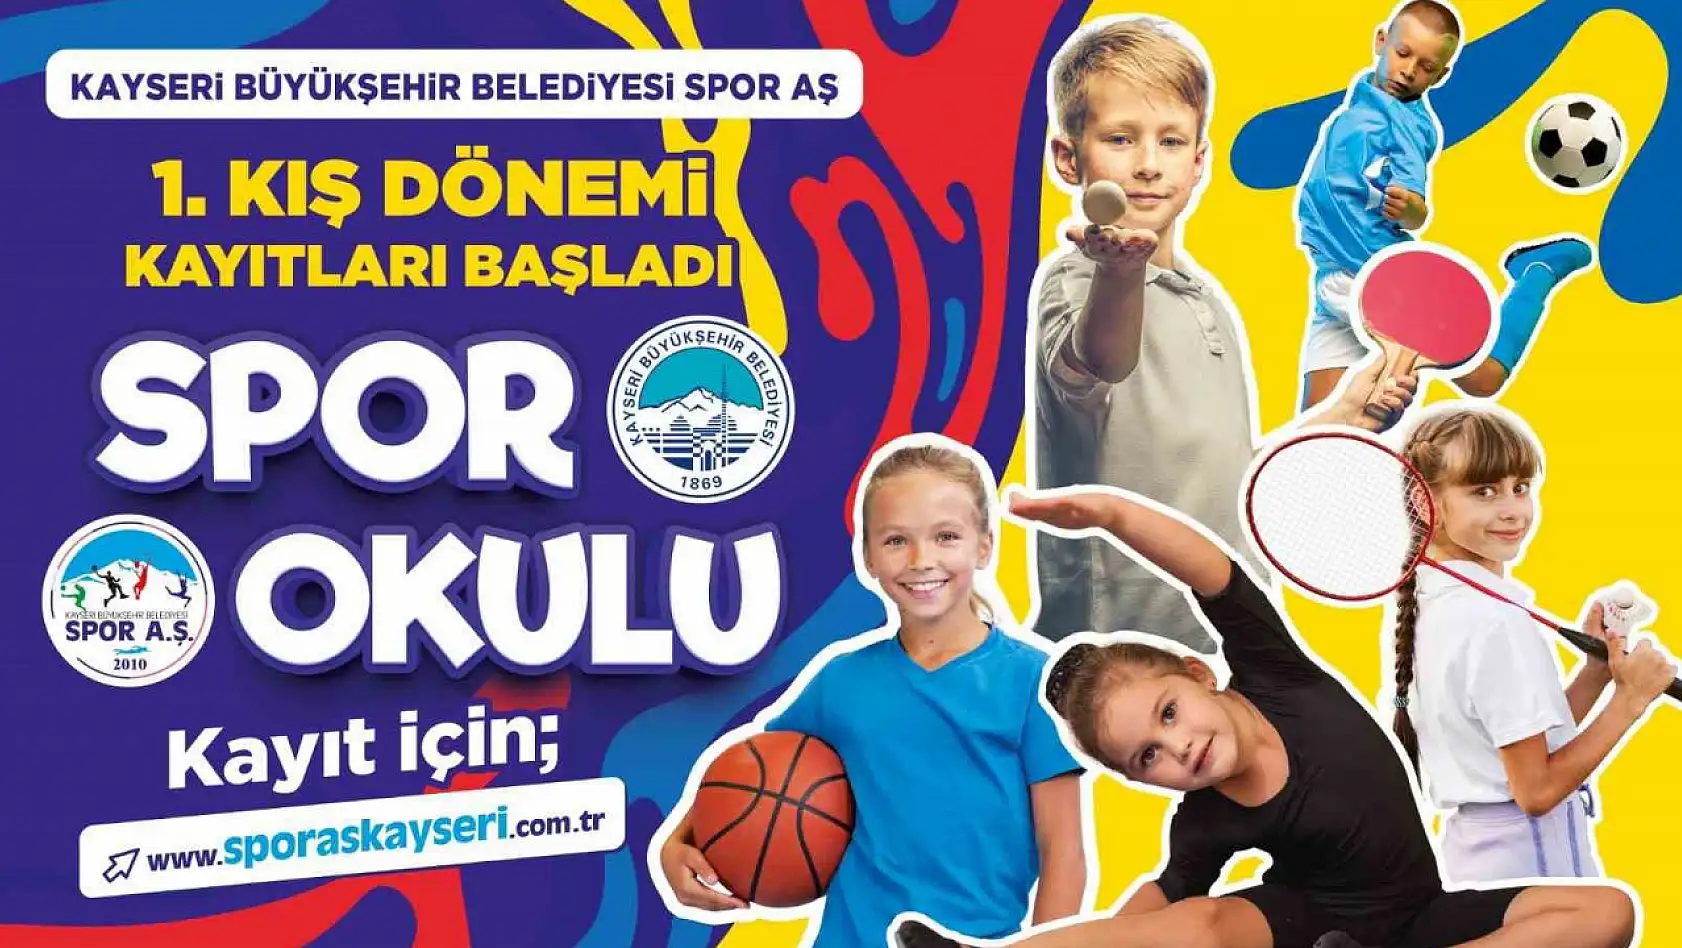 Büyükşehir Spor A.Ş. 1'inci Kış Dönemi Spor Okulları kayıtlarını başlattı